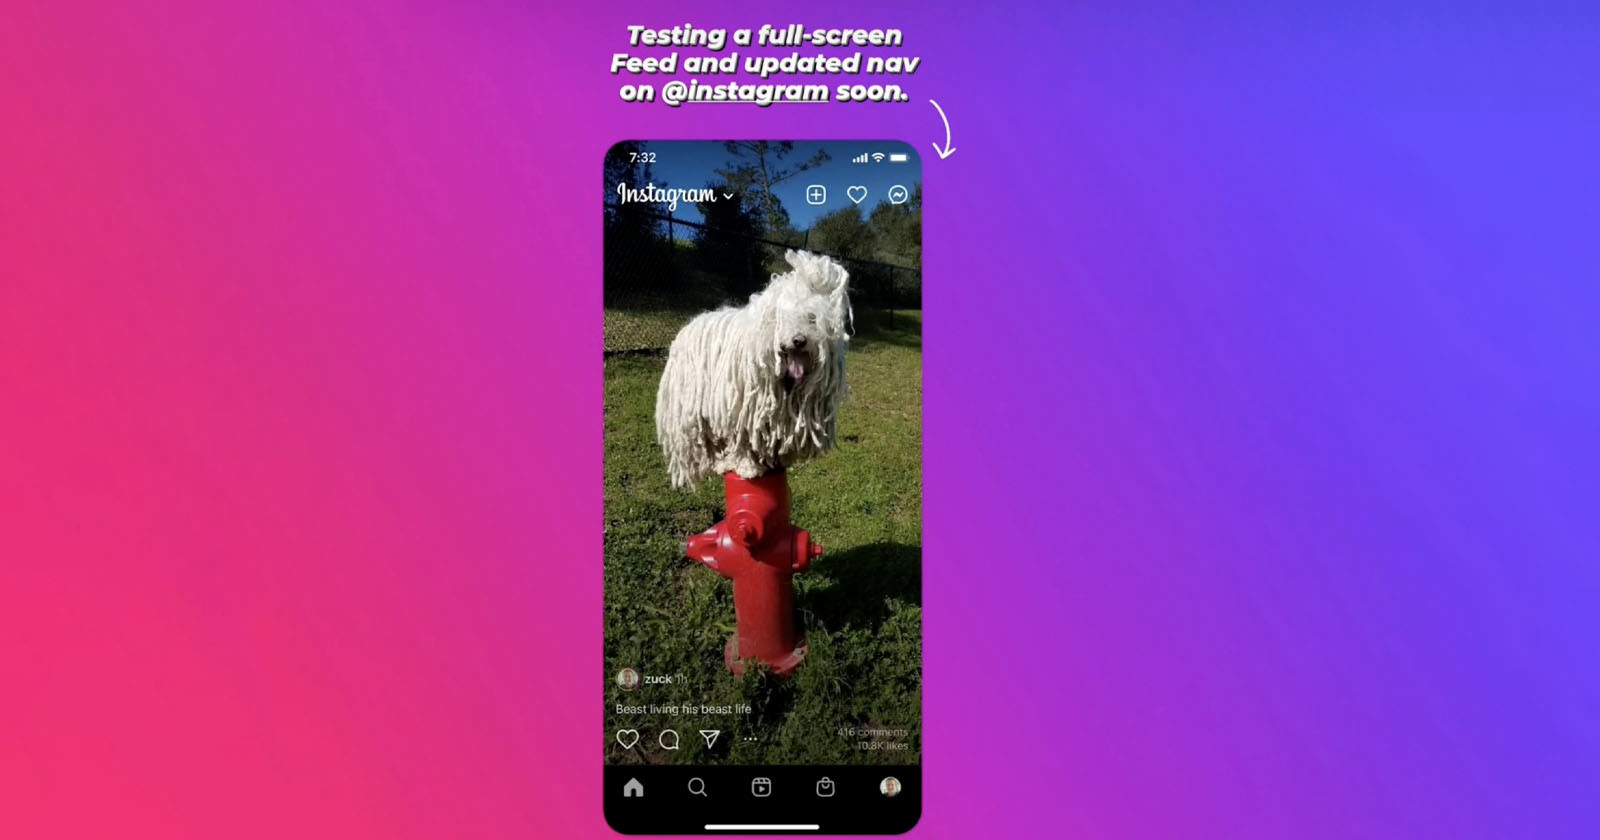  instagram testing tiktok-like full-screen feed 